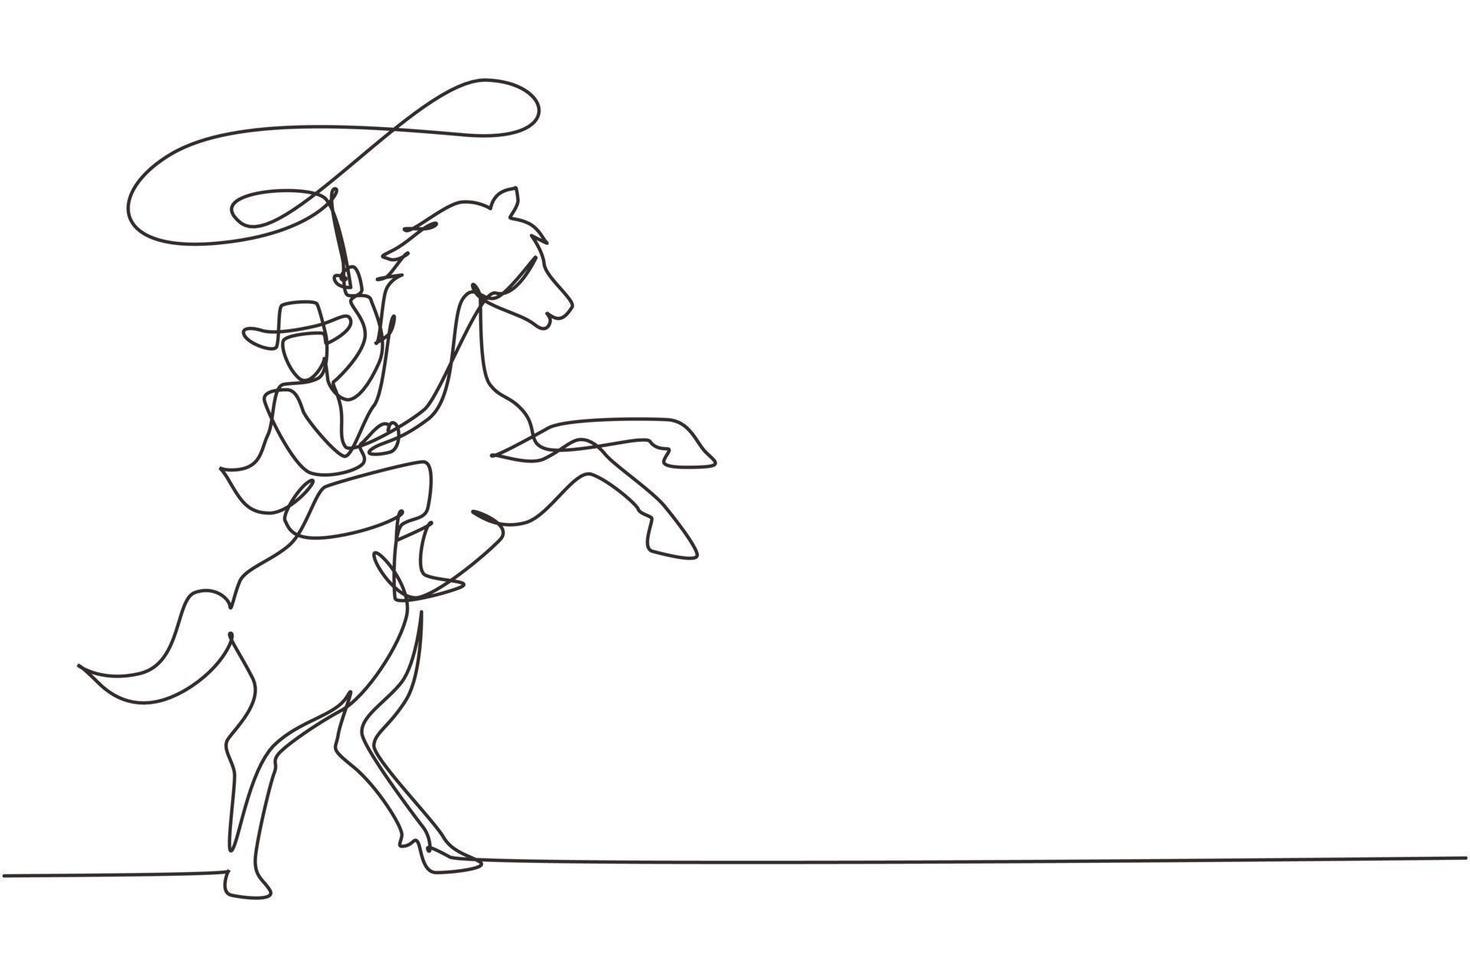 cowboy a una linea continua che lancia il lazo e si impenna a cavallo. cowboy americano a cavallo e lancio di lazo. cowboy con lazo di corda a cavallo. grafica vettoriale di disegno a linea singola